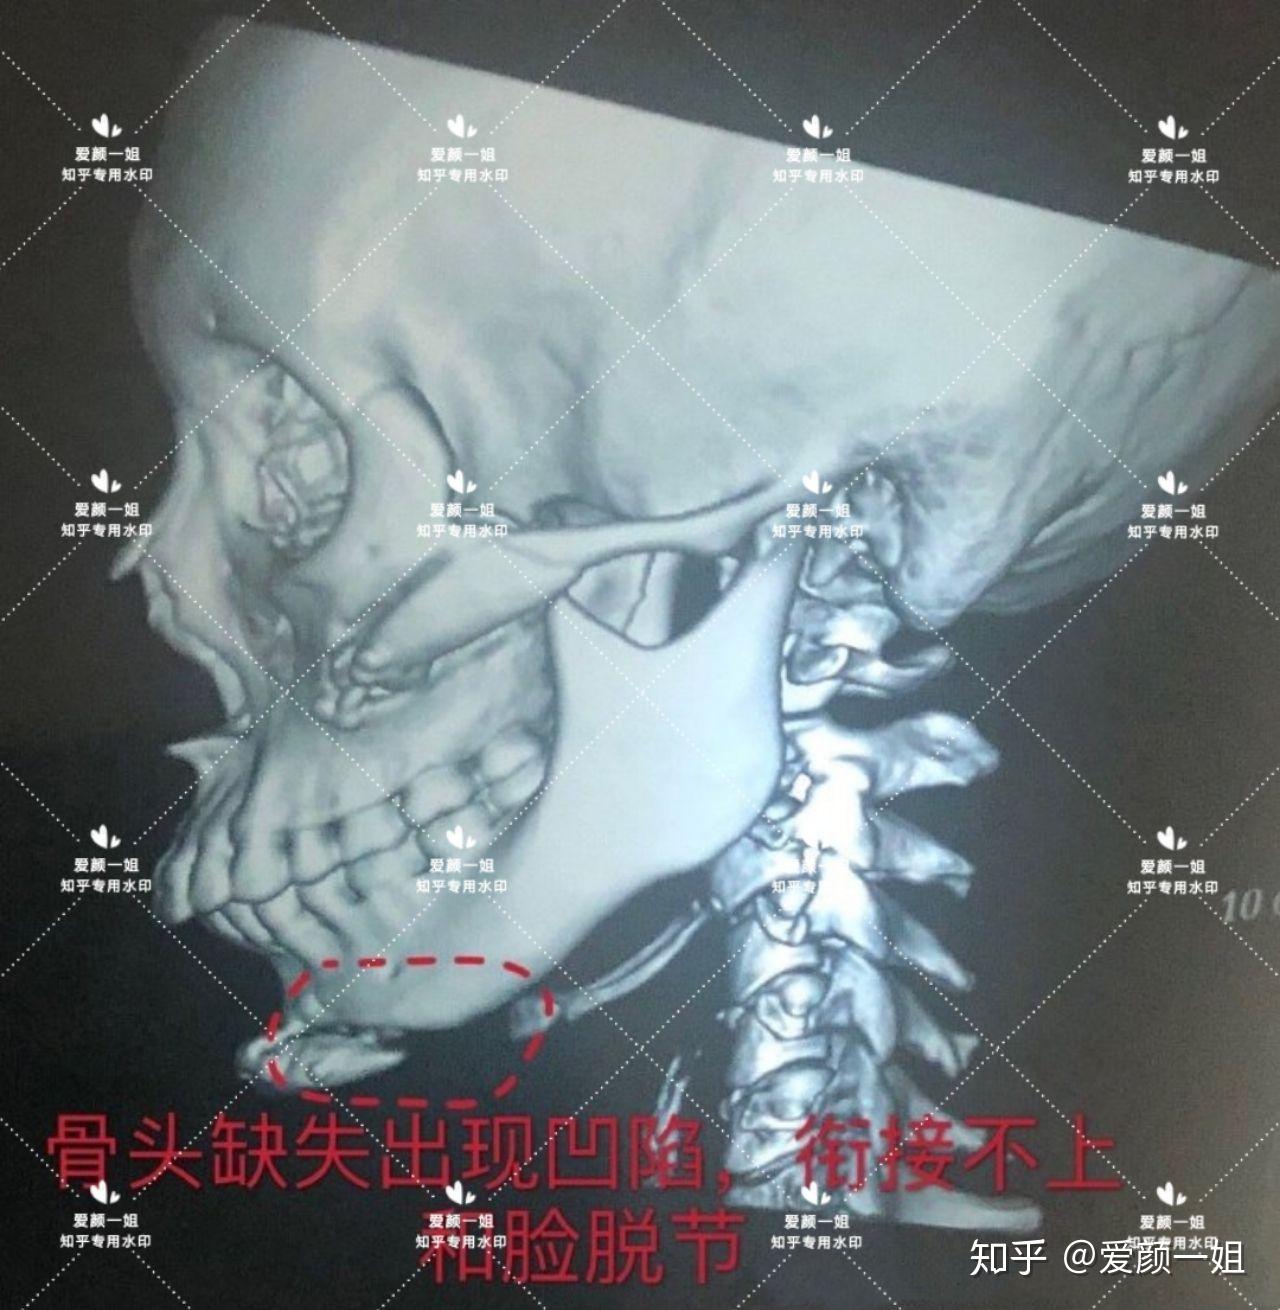 骨性上颌前突，下颌后缩-青少年矫正案例-曹海峰主治医师-爱问医生